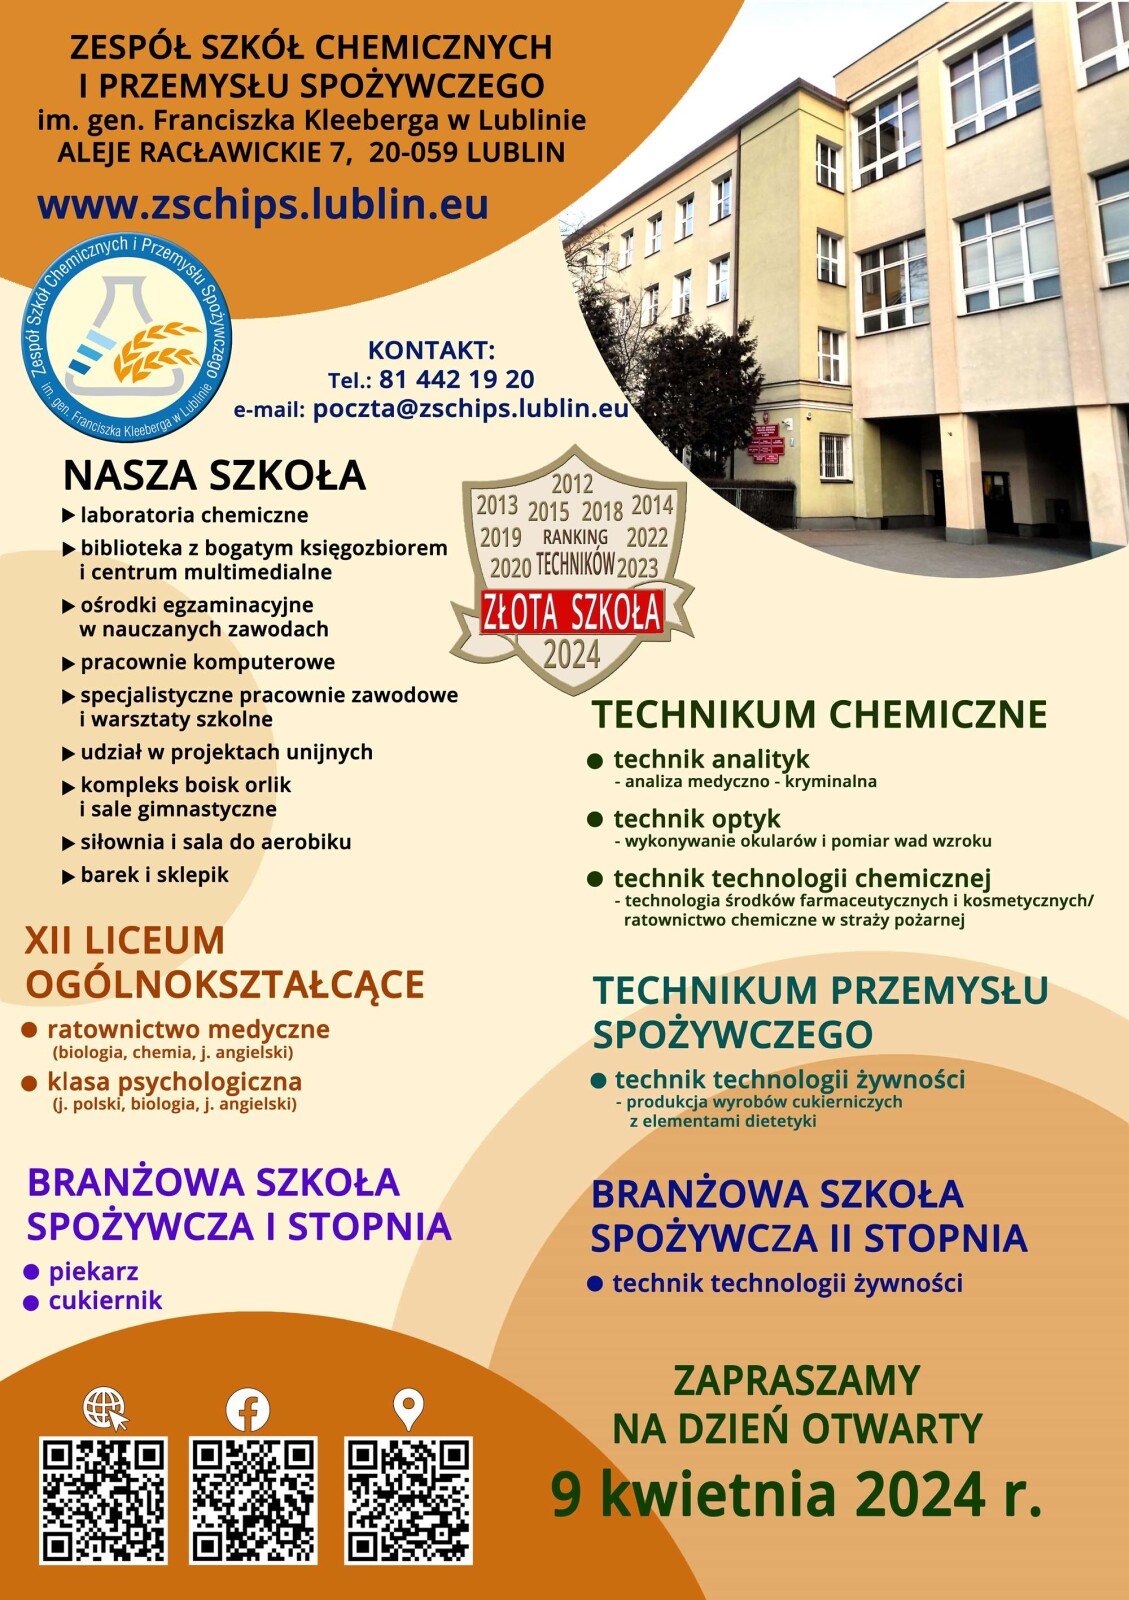 Plakat promujący ZSCHIPS w Lublinie